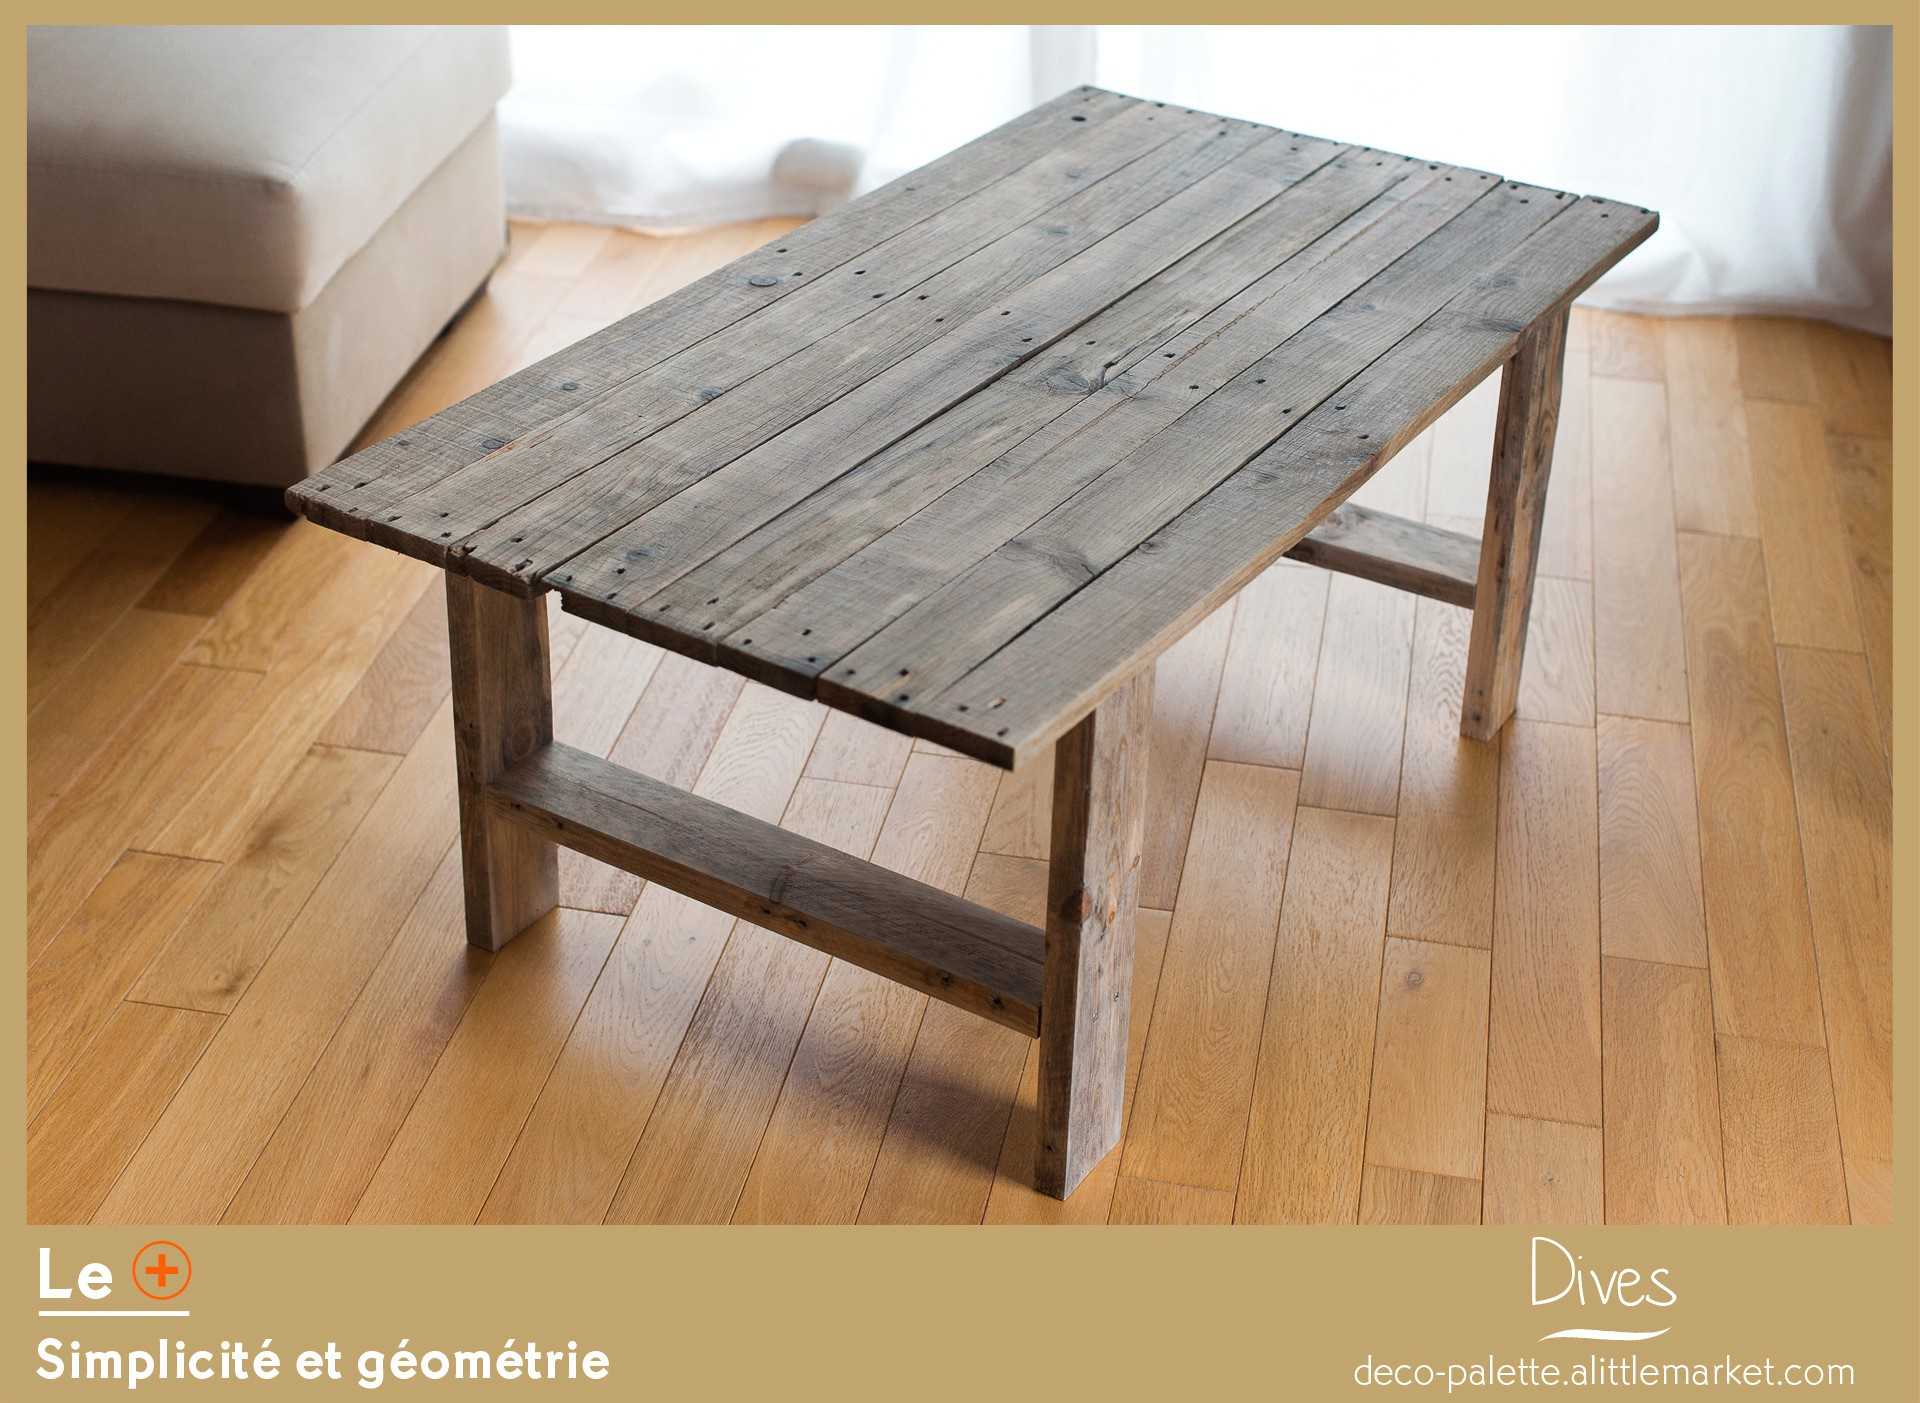 fabriquer table haute inspirations et fabriquer table de jardin basse une haute photo fabriquer une table basse